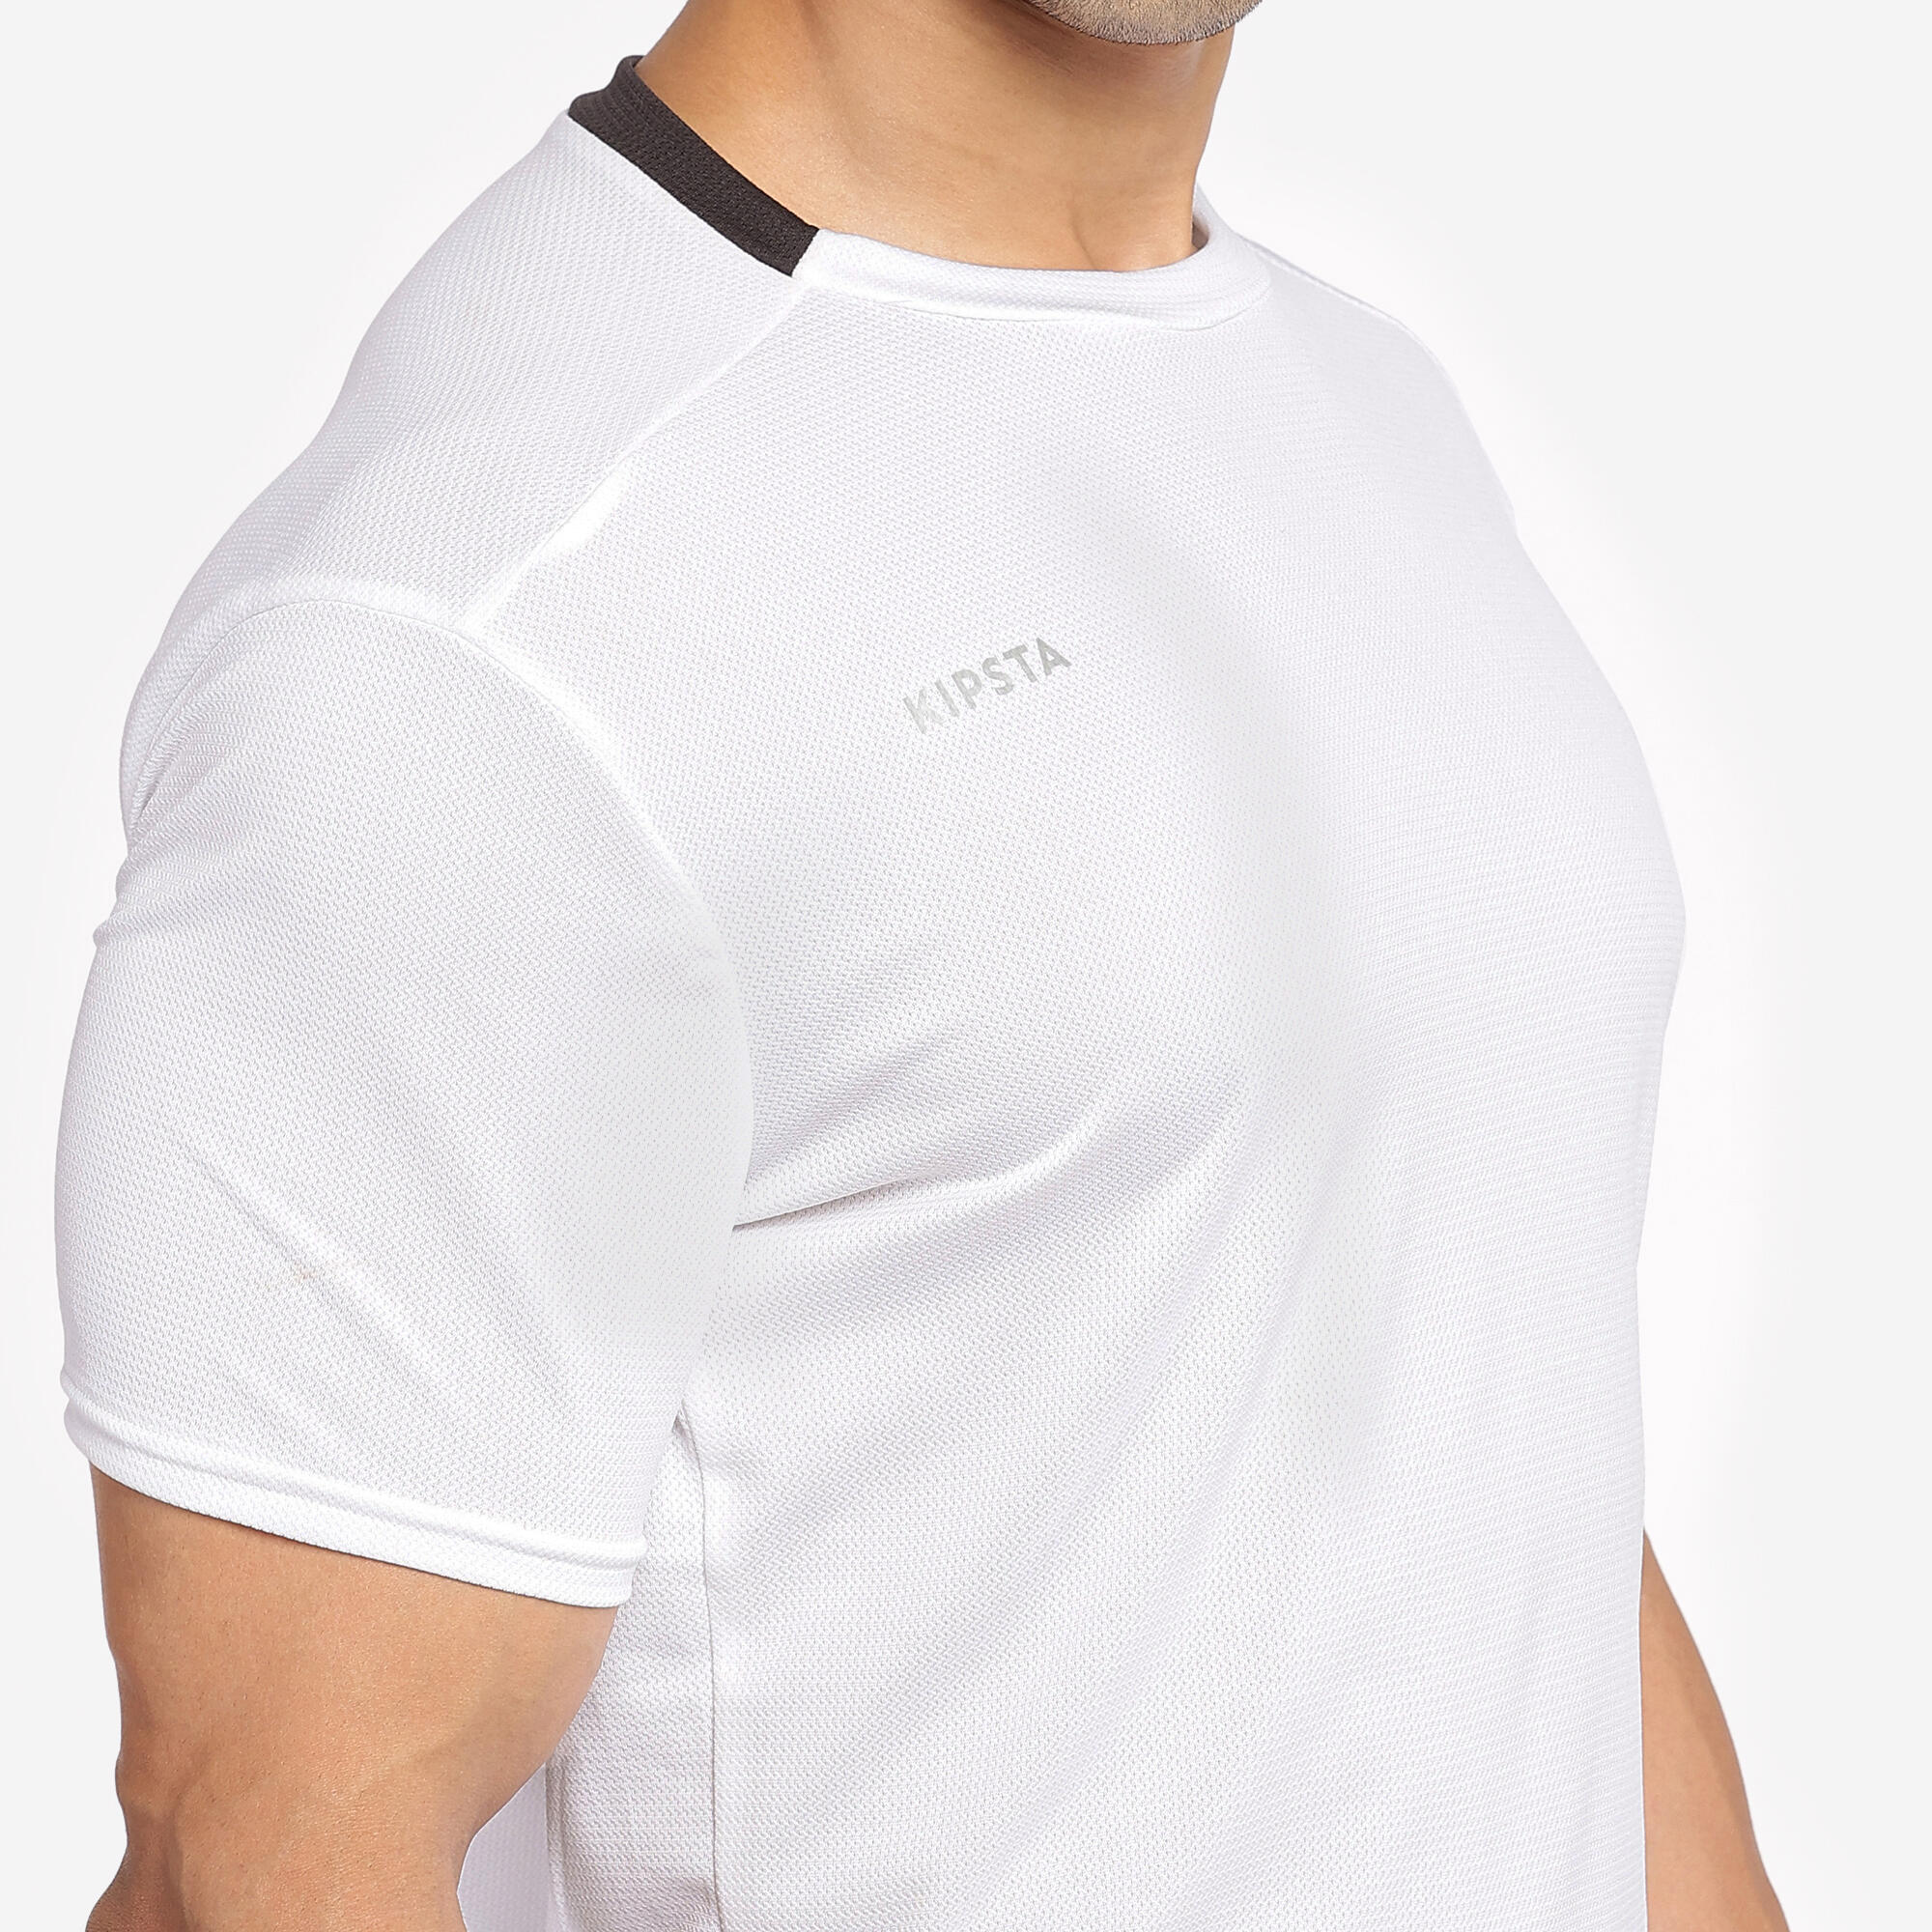 Adult Football Shirt Essential Club - White 8/29